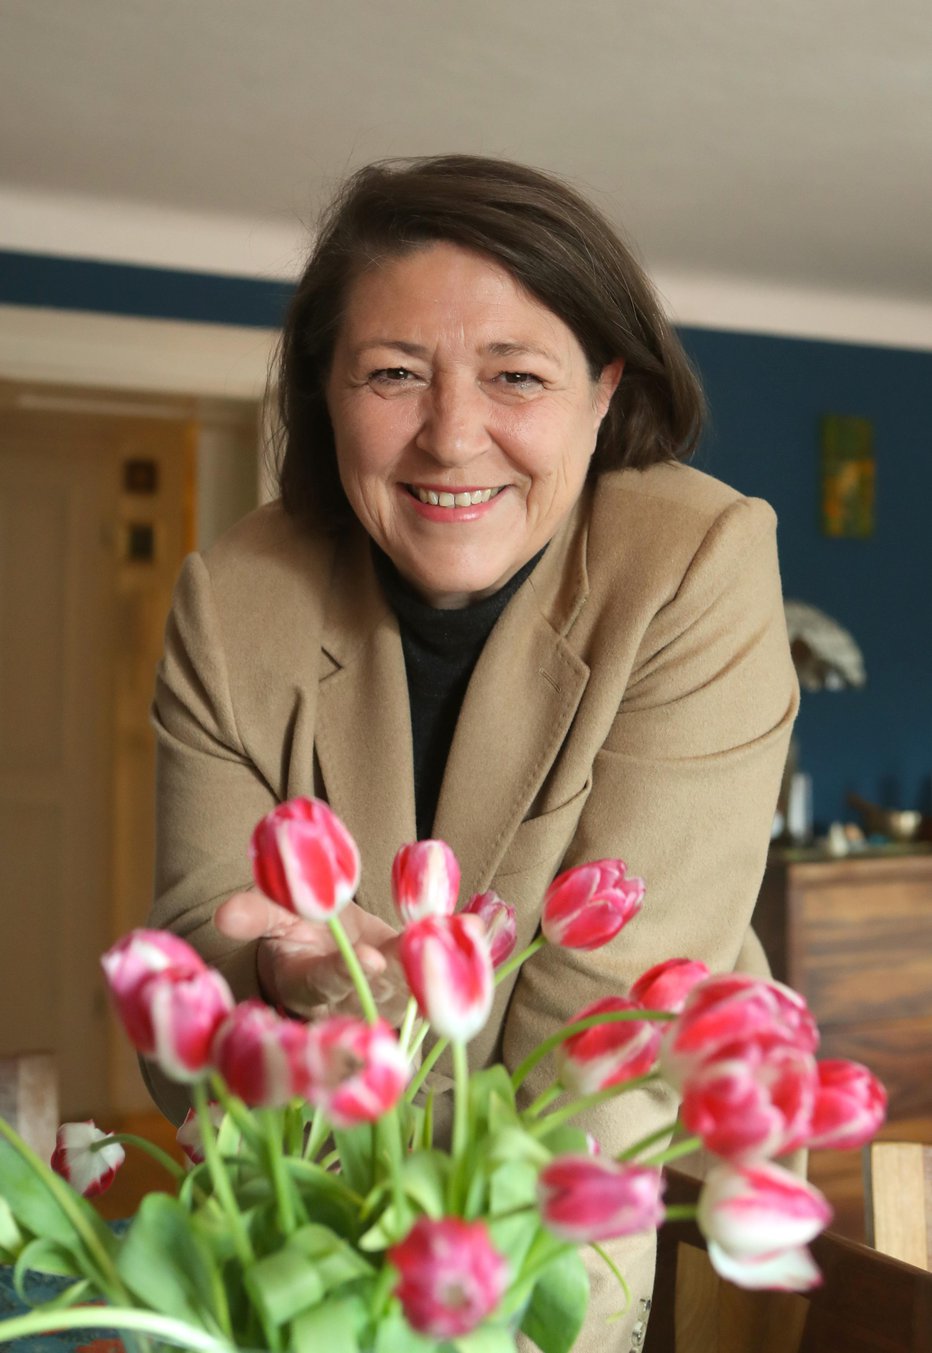 Fotografija: Slo., Lj., 14.4.2021, Violeta Bulc, slovenska političarka in podjetnica, foto: Dejan Javornik